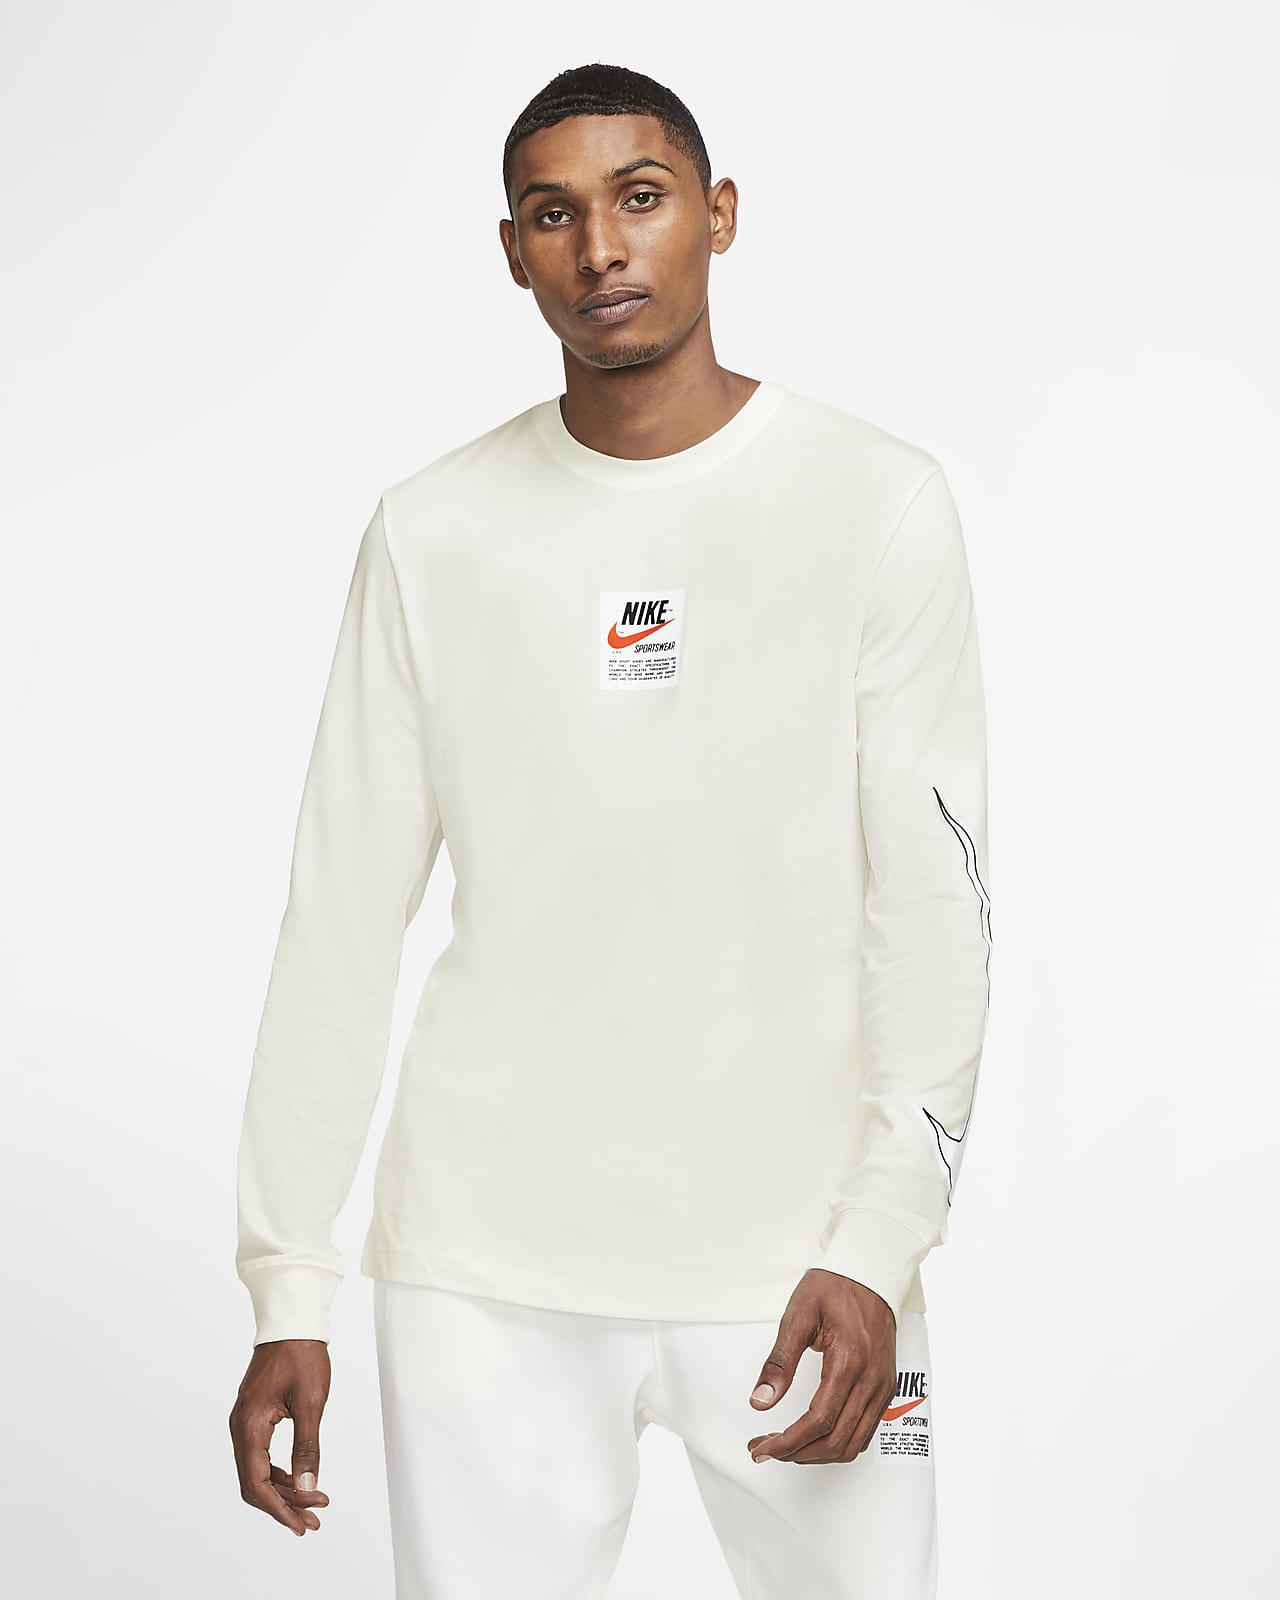 Nike Sportswear Men's Long-Sleeve Printed Top